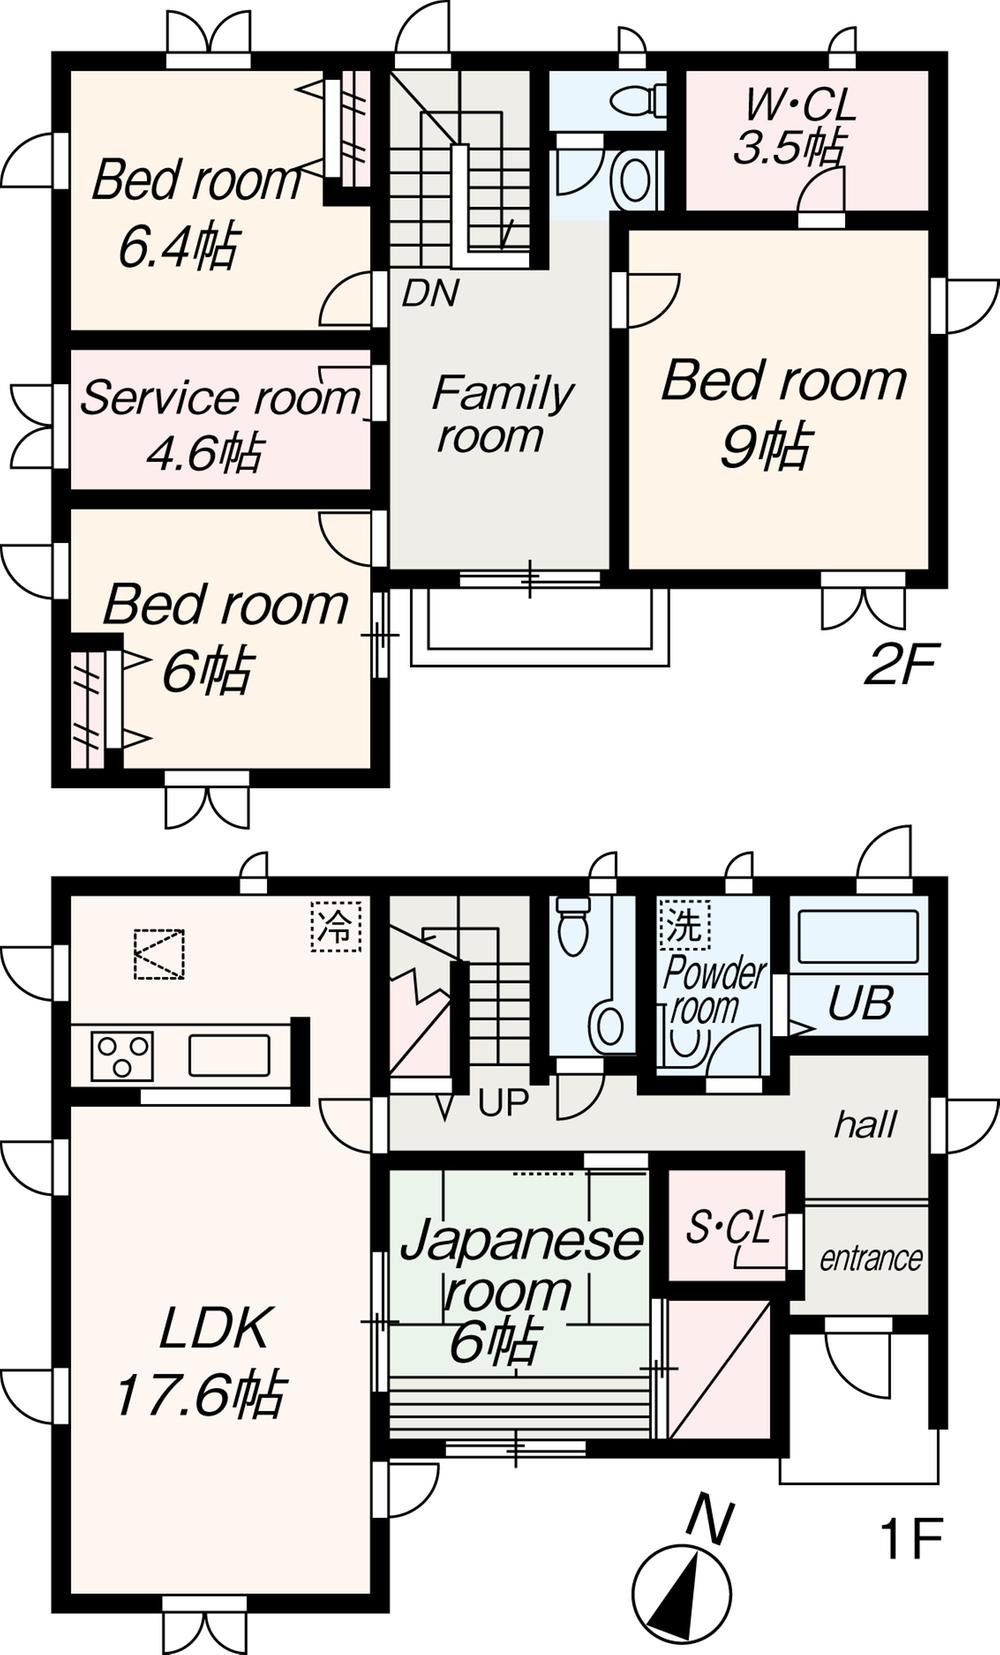 Floor plan. 33,800,000 yen, 4LDK + S (storeroom), Land area 168.59 sq m , Building area 130.78 sq m floor plan